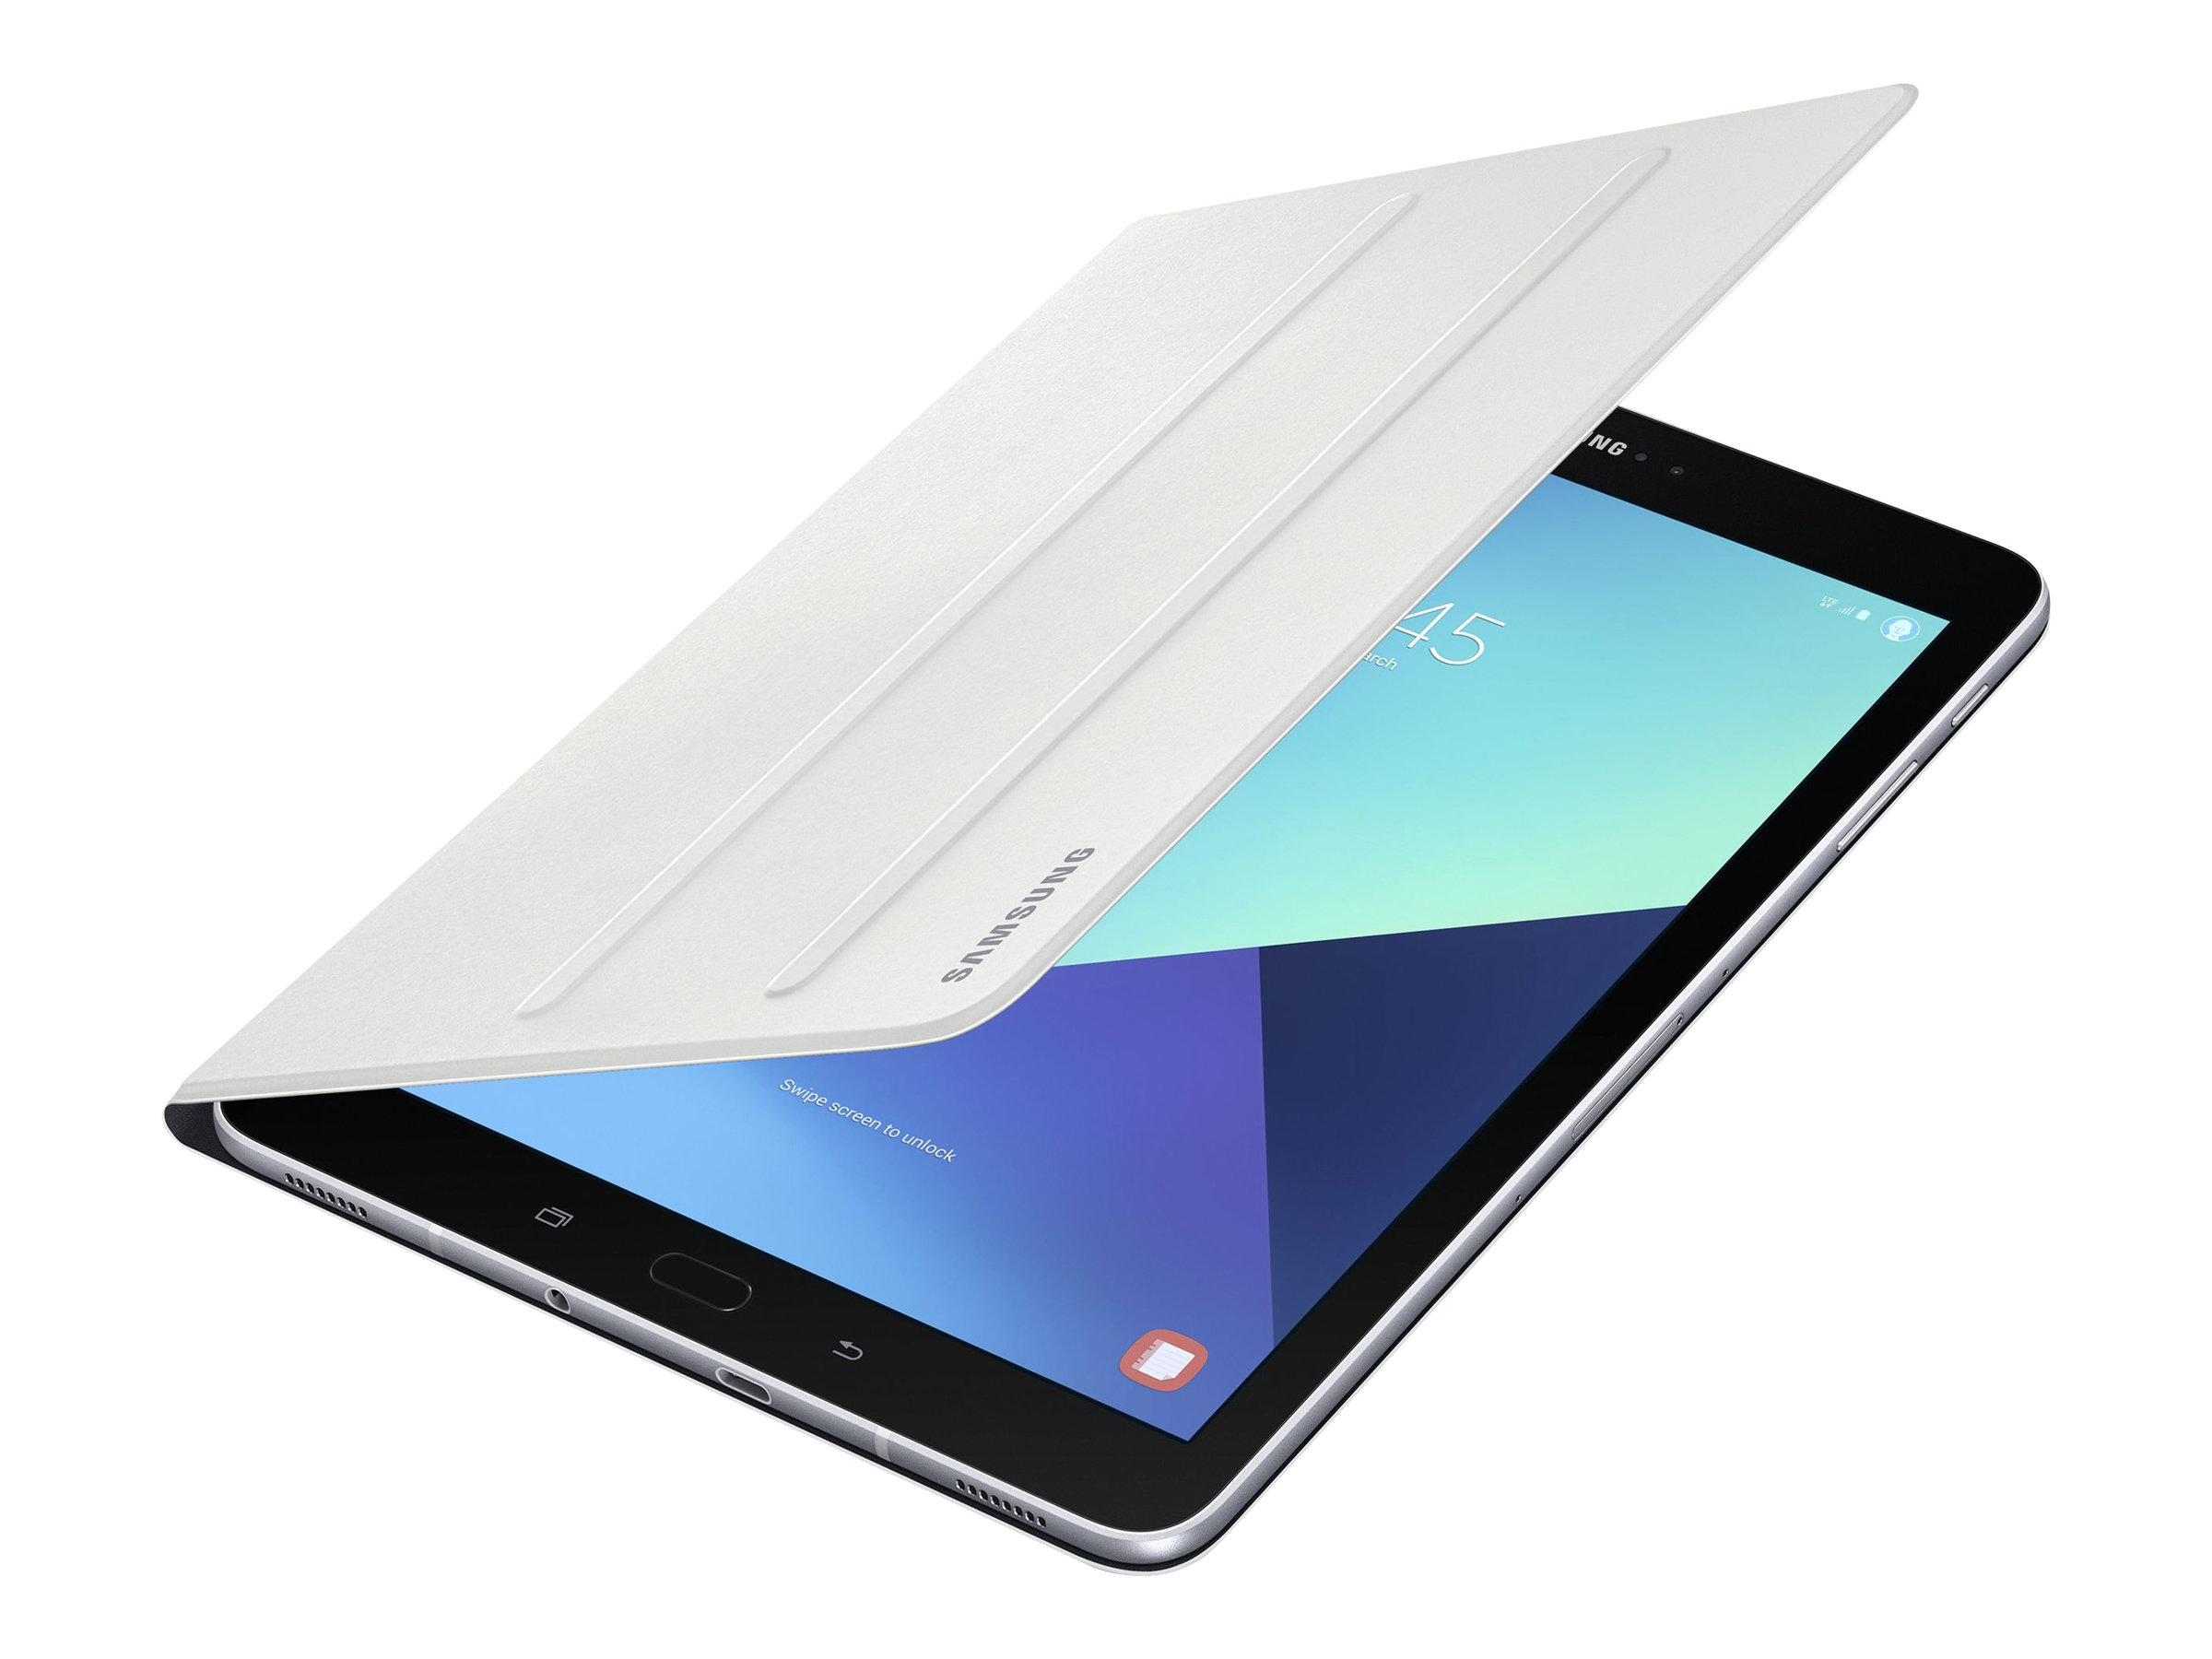 Couverture de livre Samsung EF-BT820 - Étui à rabat pour tablette - blanc - pour Galaxy Tab S3 - EF-BT820PWEGWW - Accessoires pour ordinateur portable et tablette